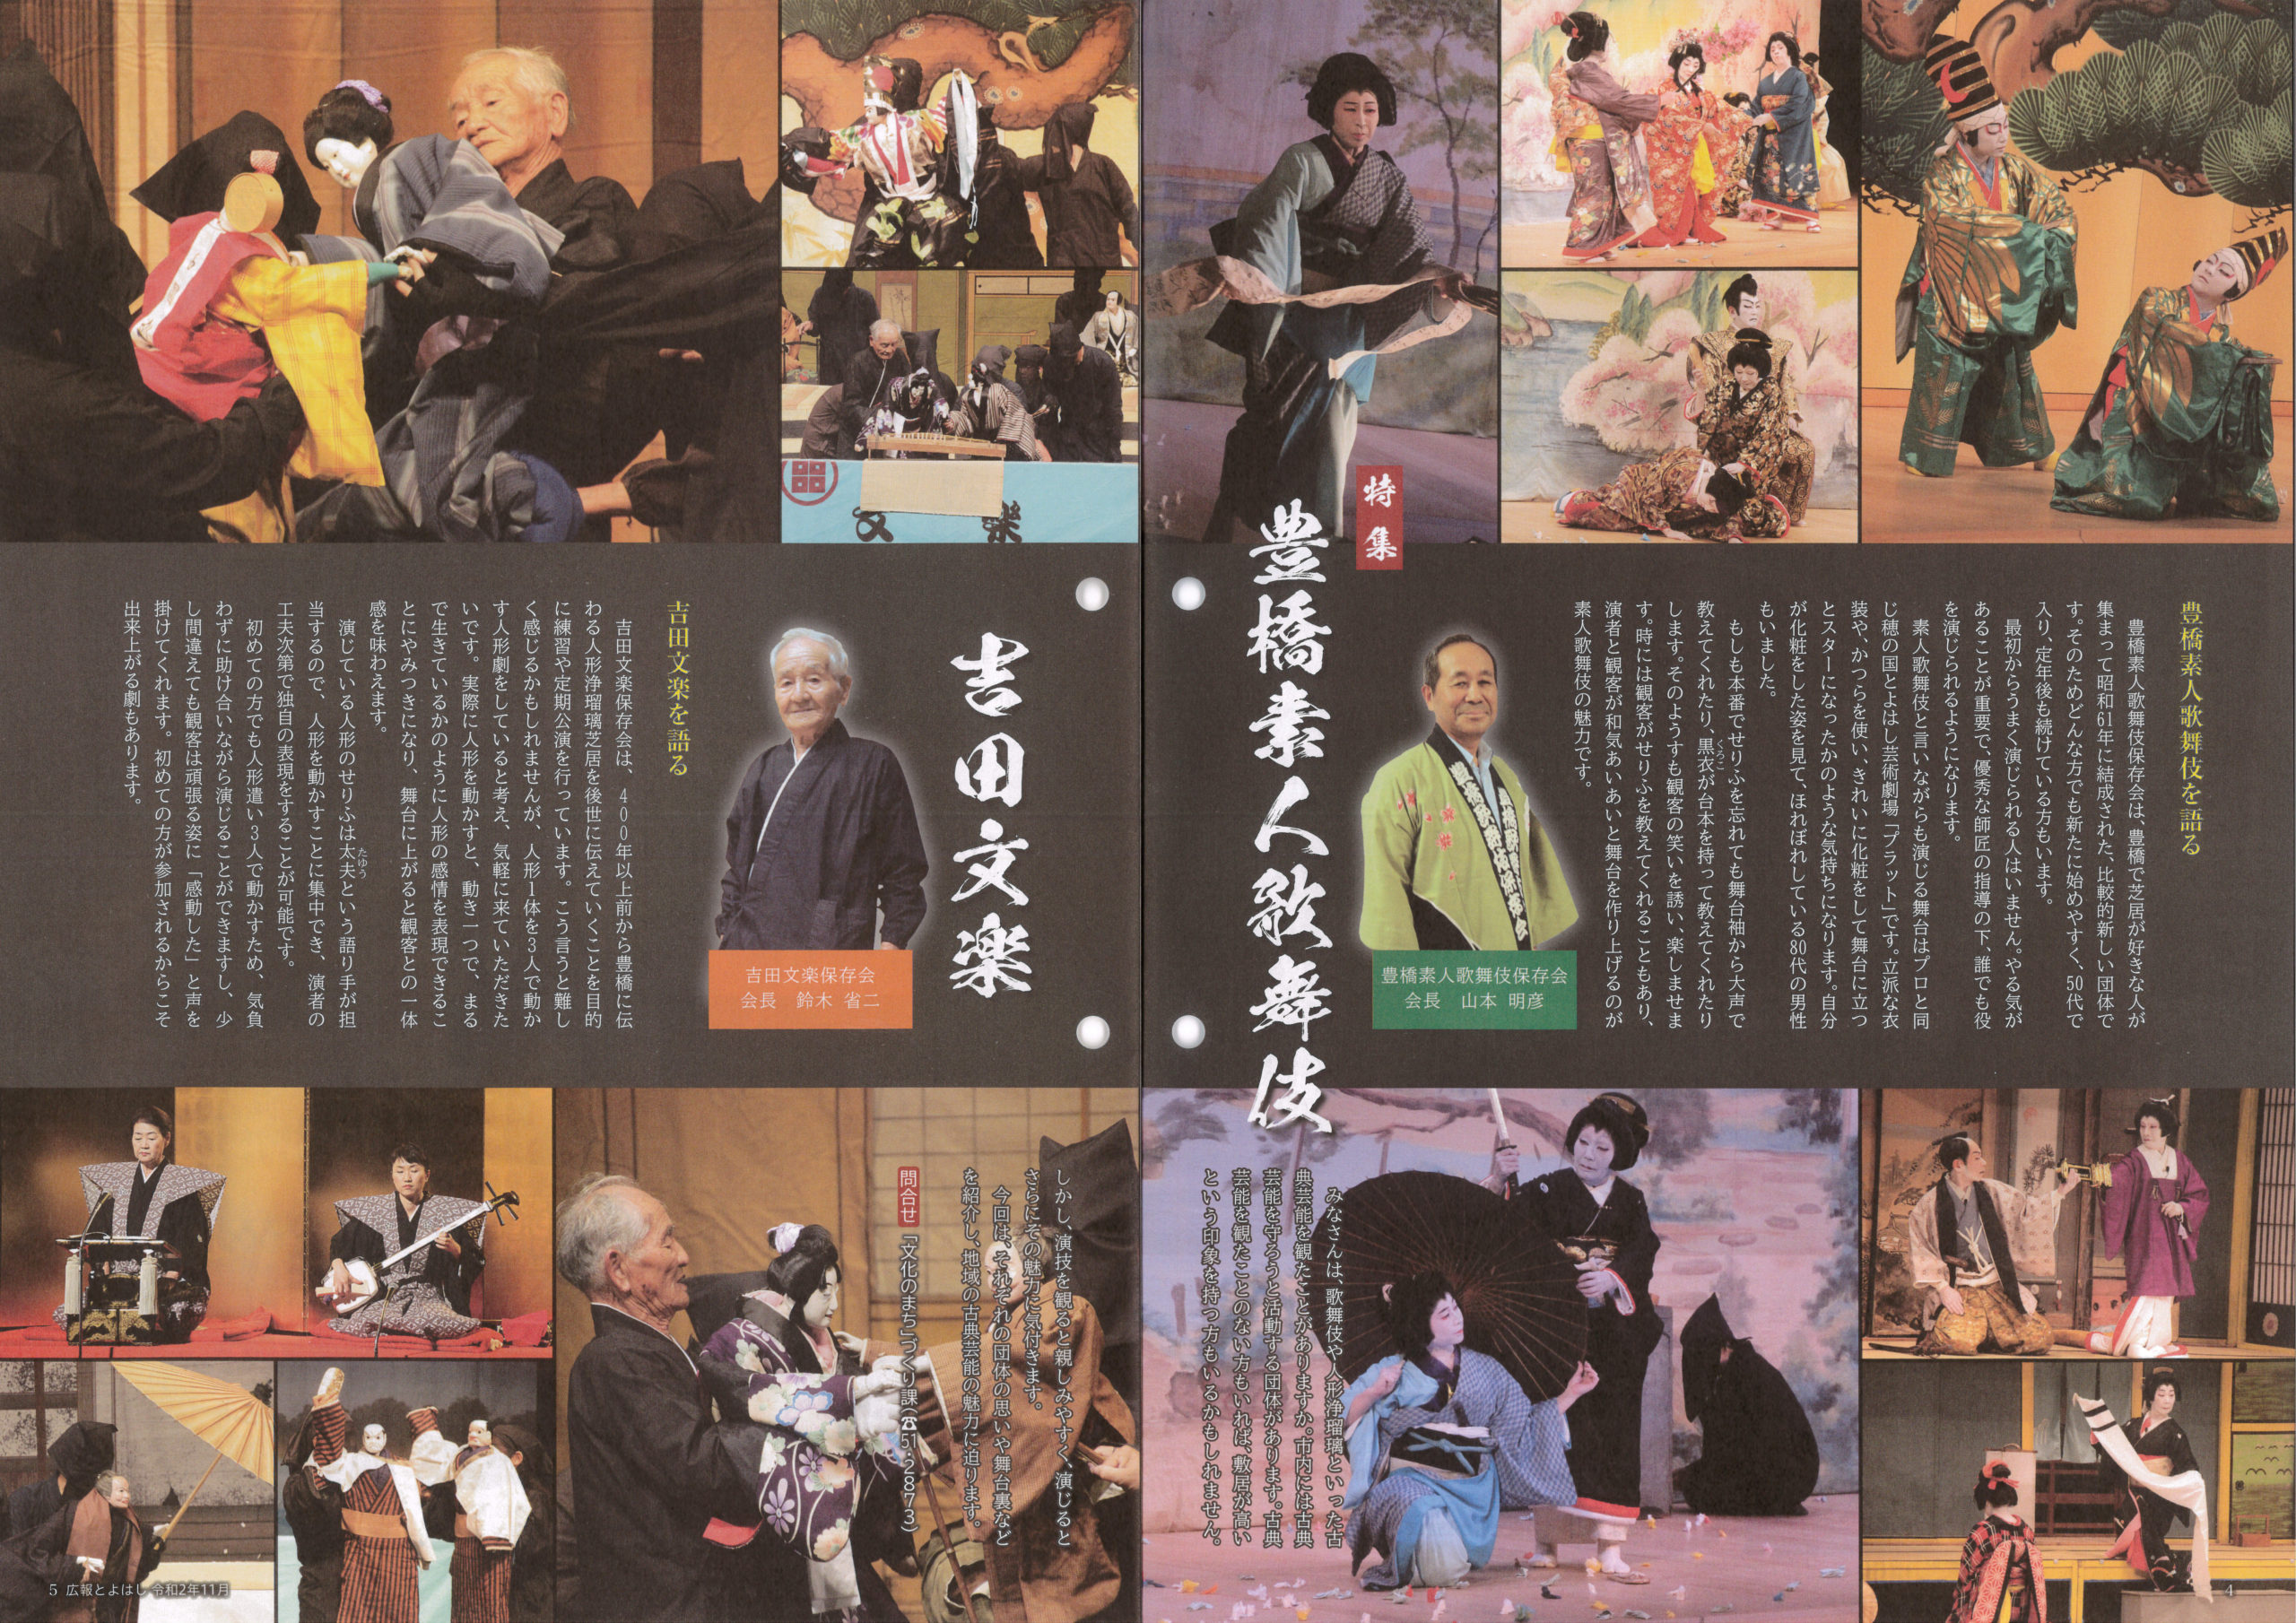 本会を特集した 広報とよはし11月号 愛知県広報コンクールで特選 豊橋素人歌舞伎保存会